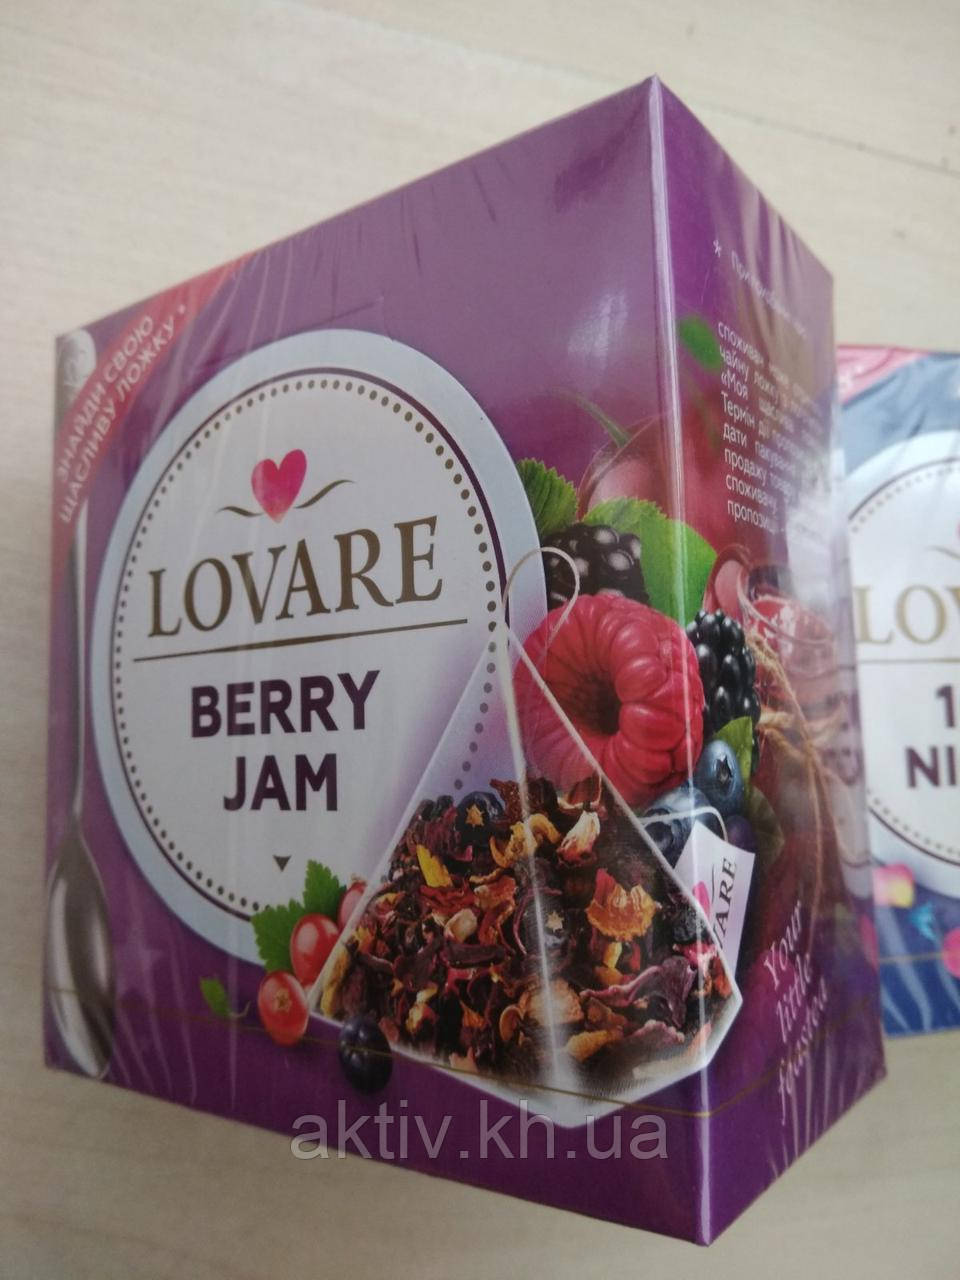 Чай фруктовий Ловаре ,, Berry Jam" 15 пірамід